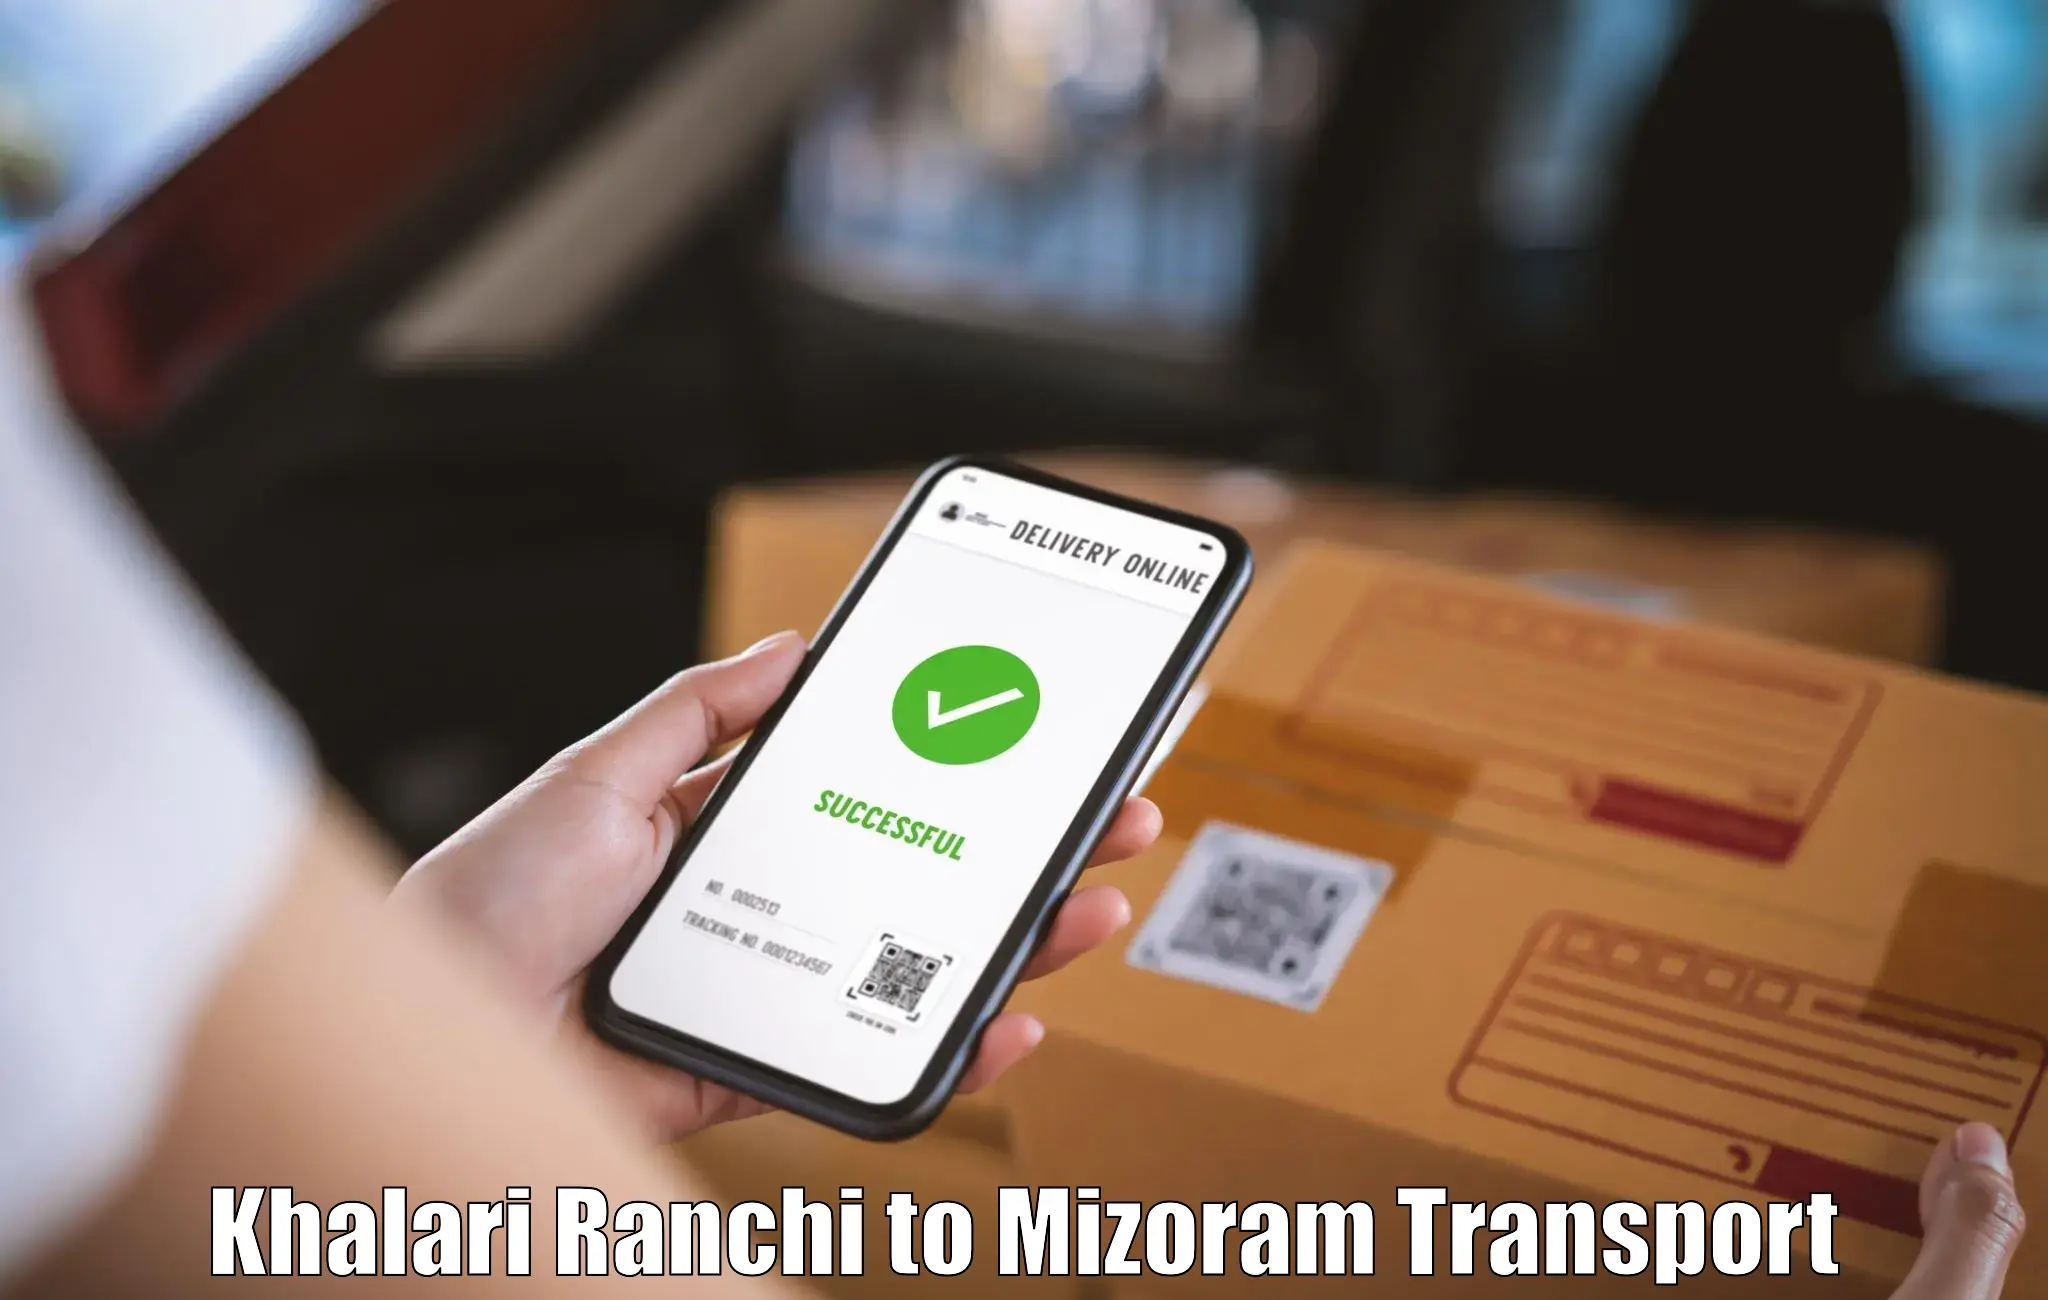 Online transport Khalari Ranchi to Aizawl